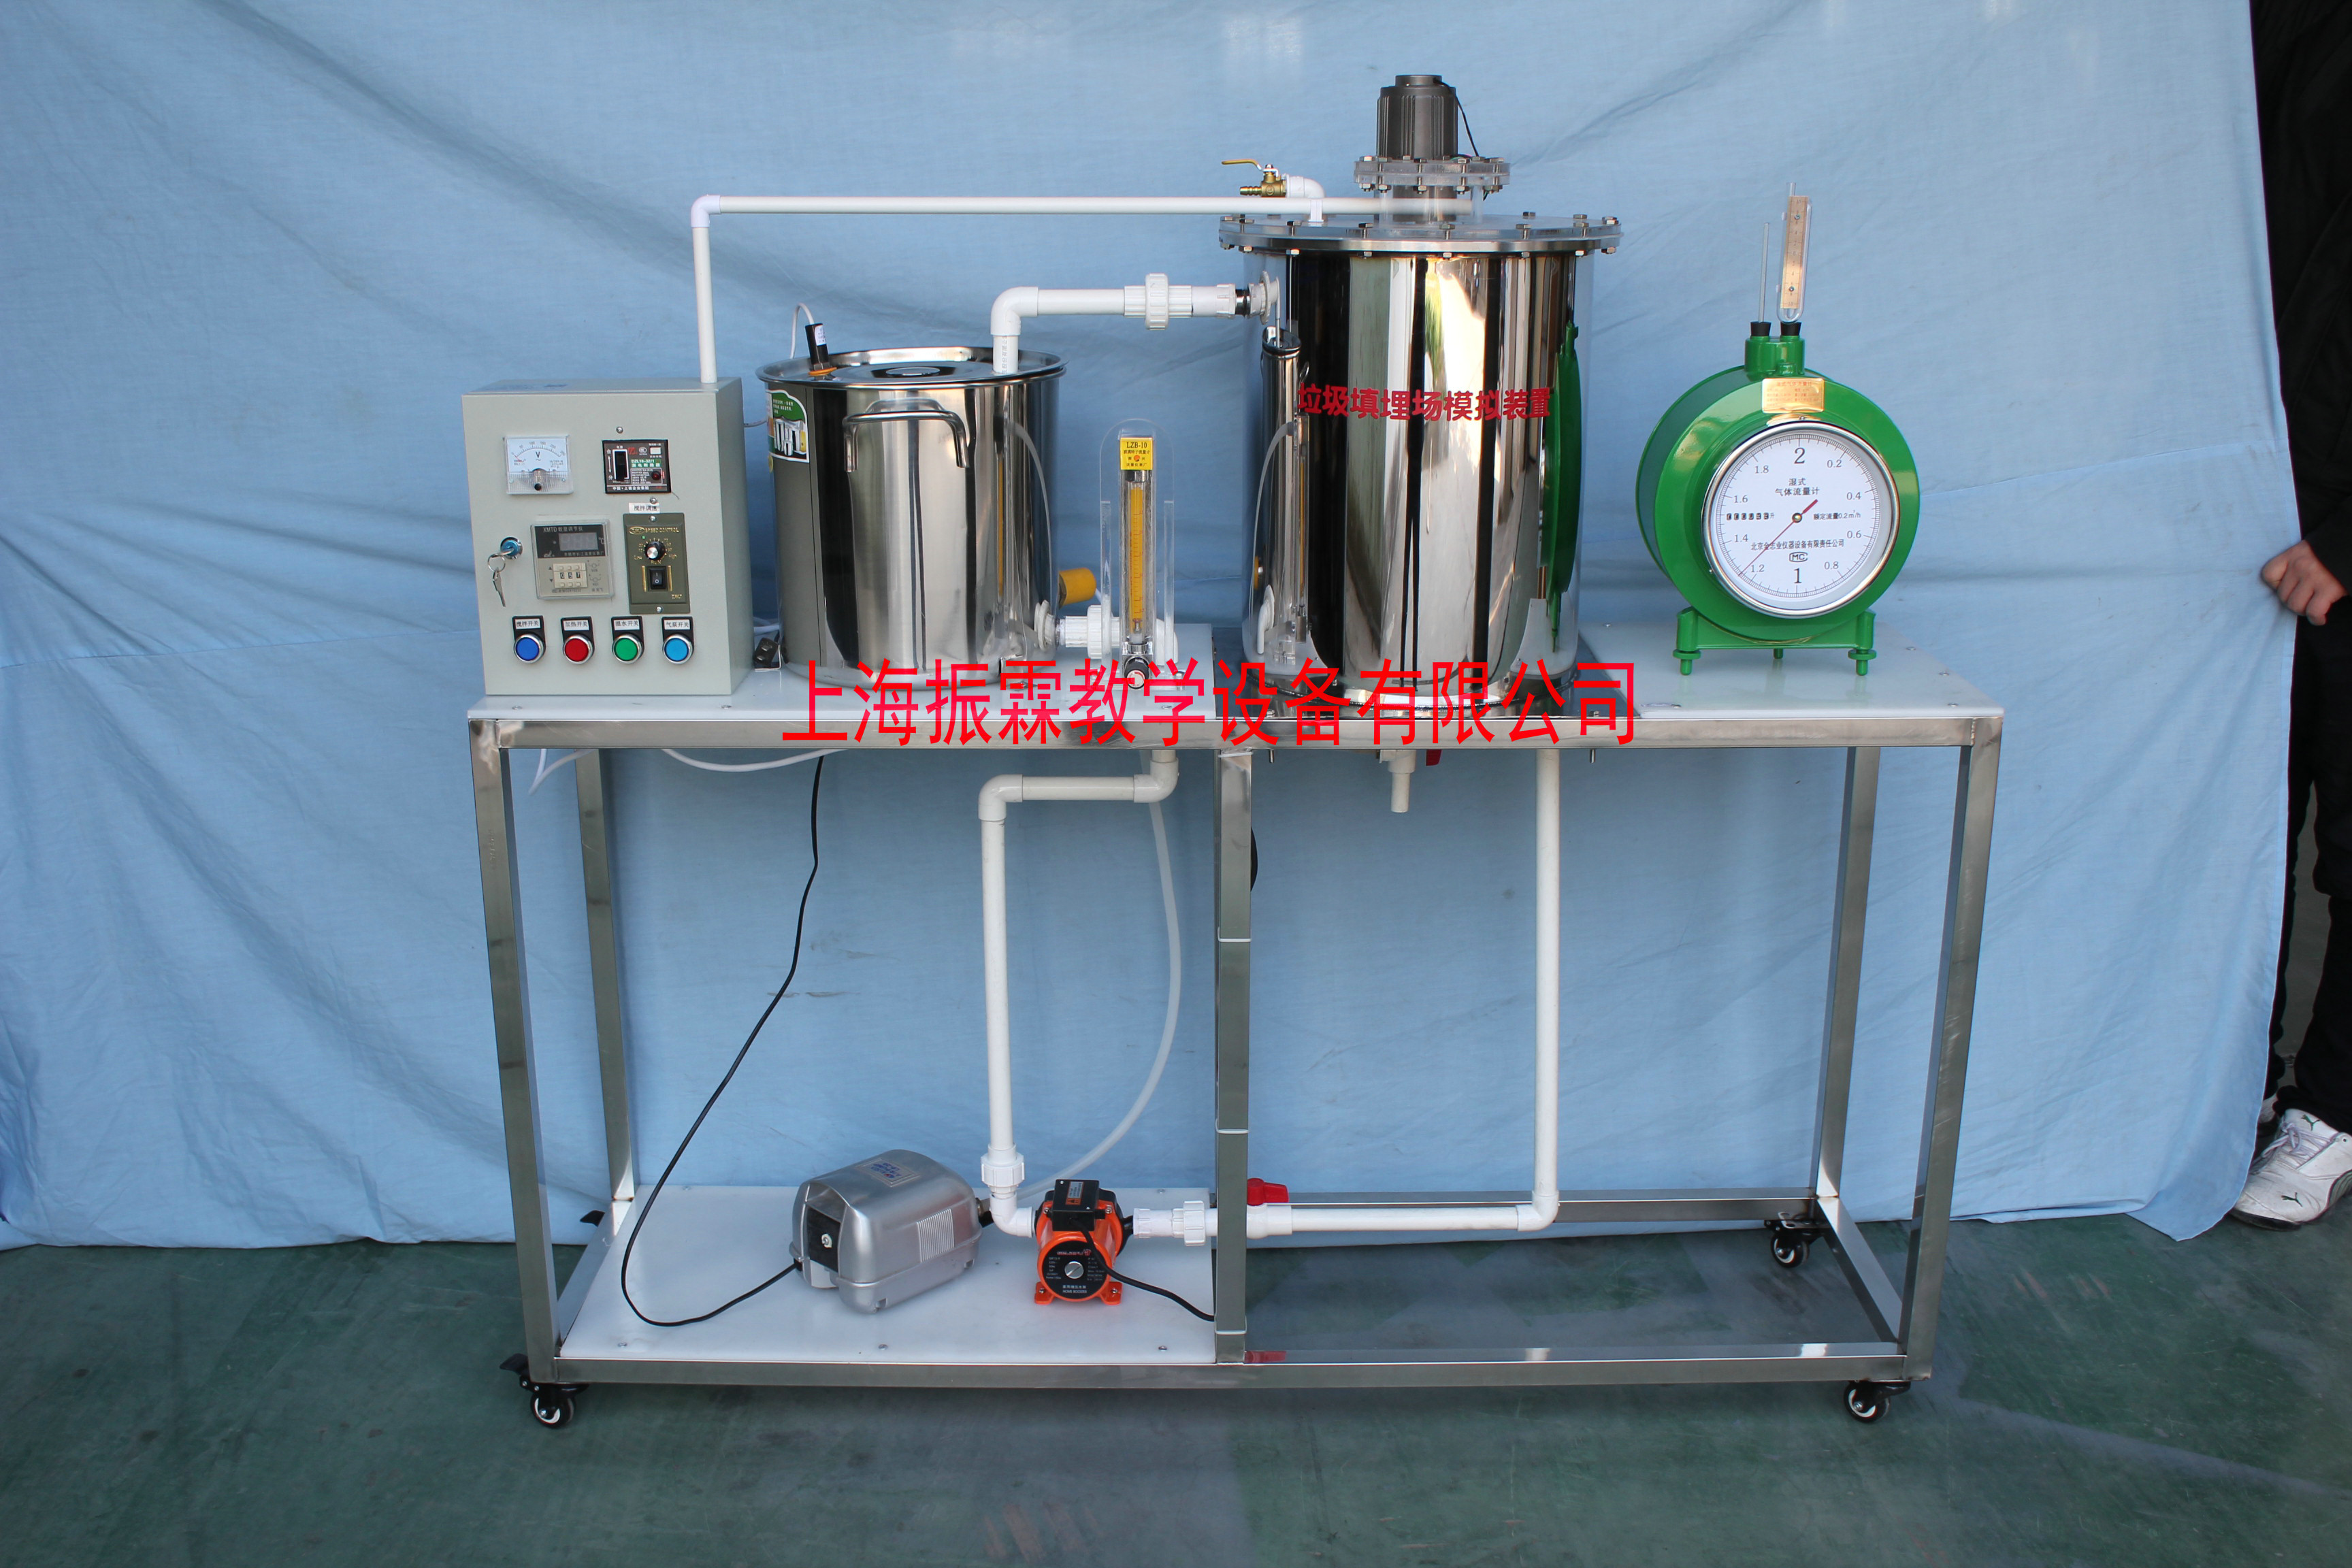 环境工程实验设备,圆形垃圾填埋发酵实验罐,污水处理实验装置--上海振霖教学设备有限公司